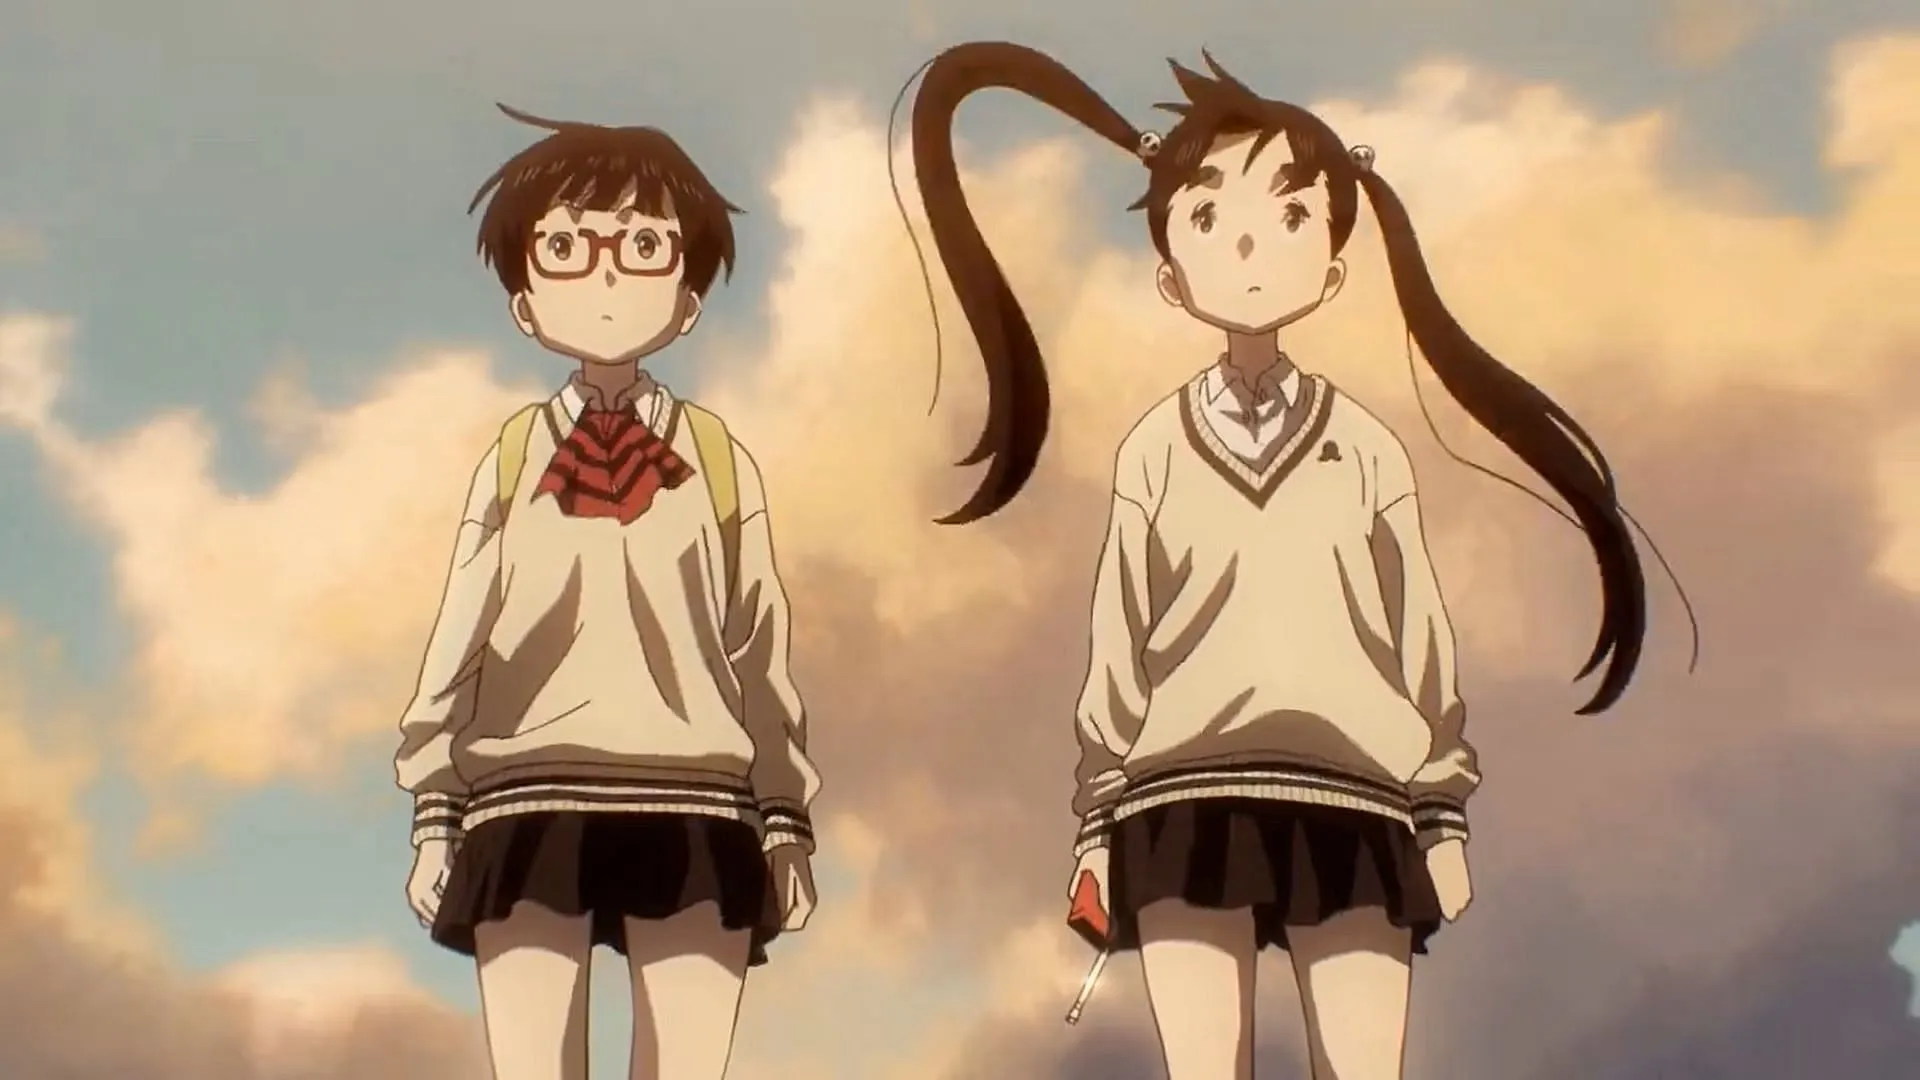 Kadode e Ouran, come visti nel film anime (Immagine tramite Production +h studios)